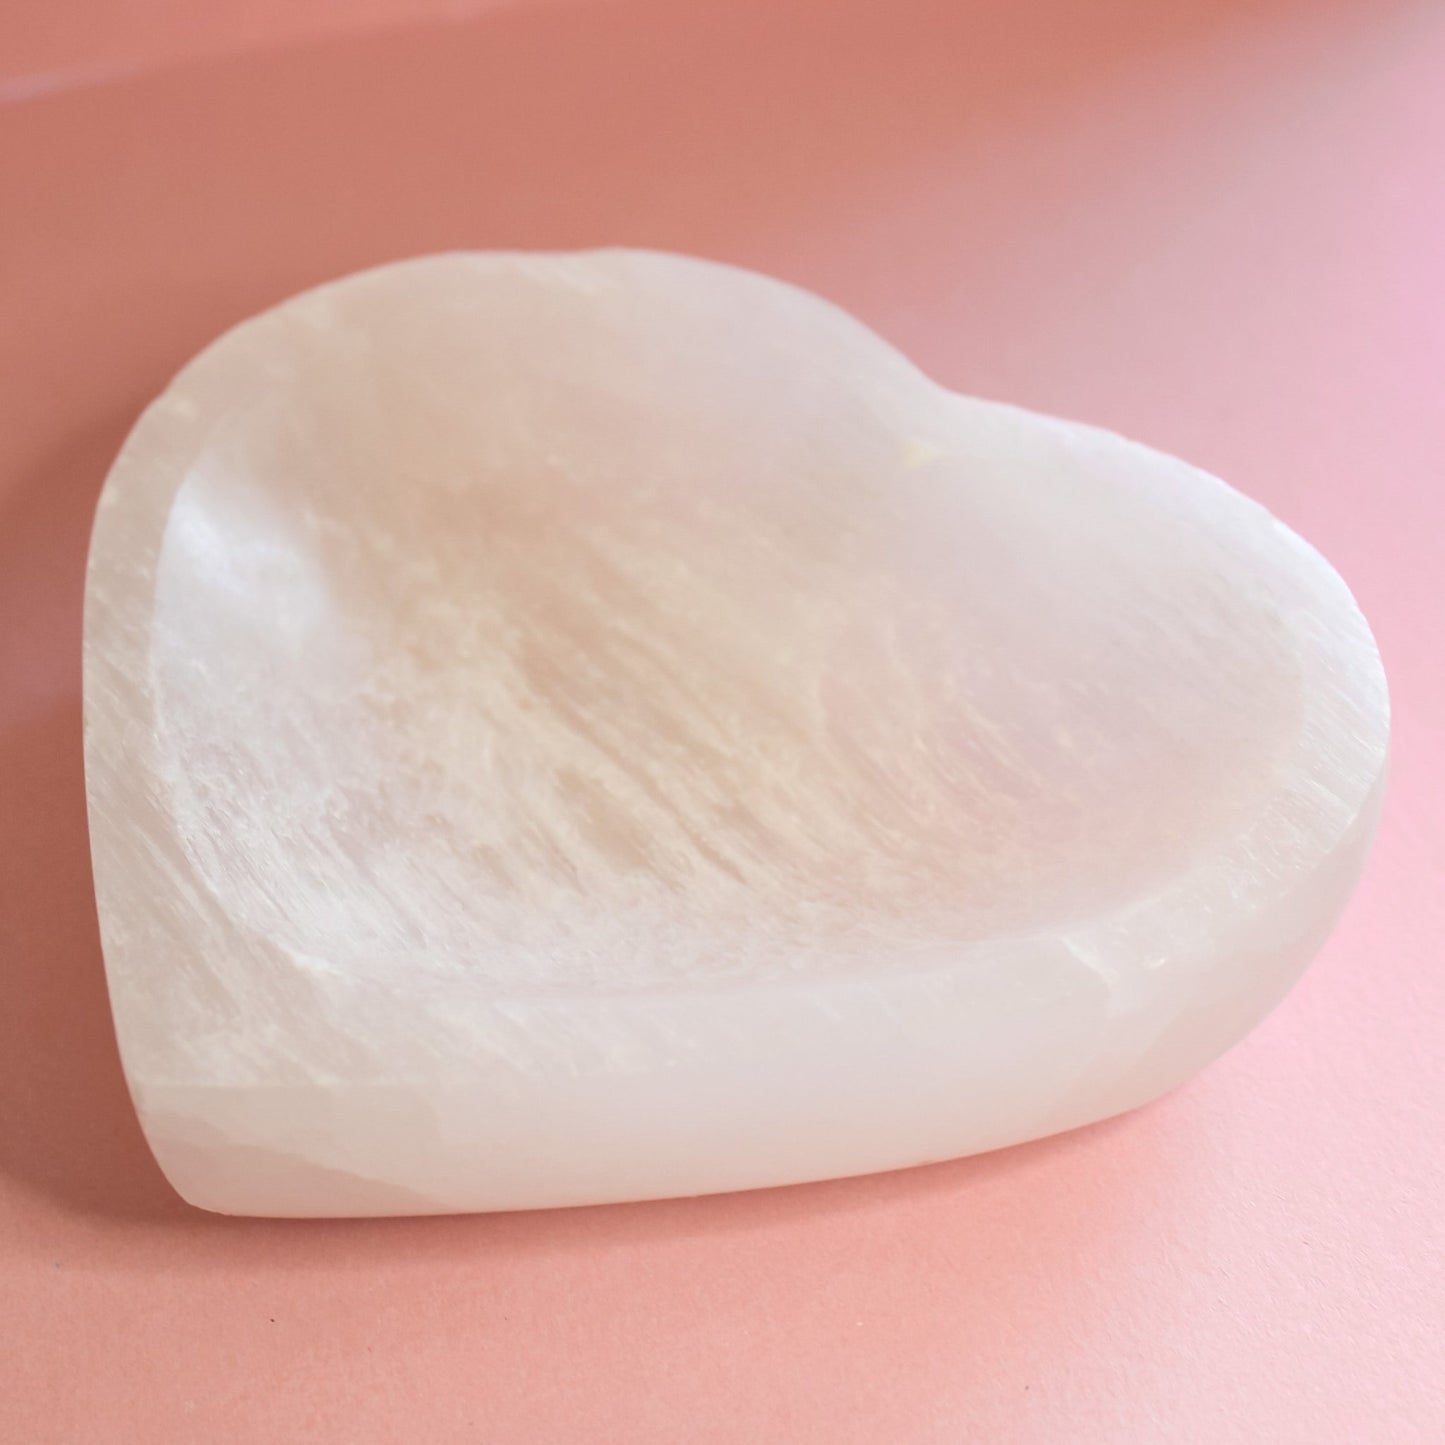 Satin Spar Heart Dish - Conscious Crystals New Zealand Crystal and Spiritual Shop